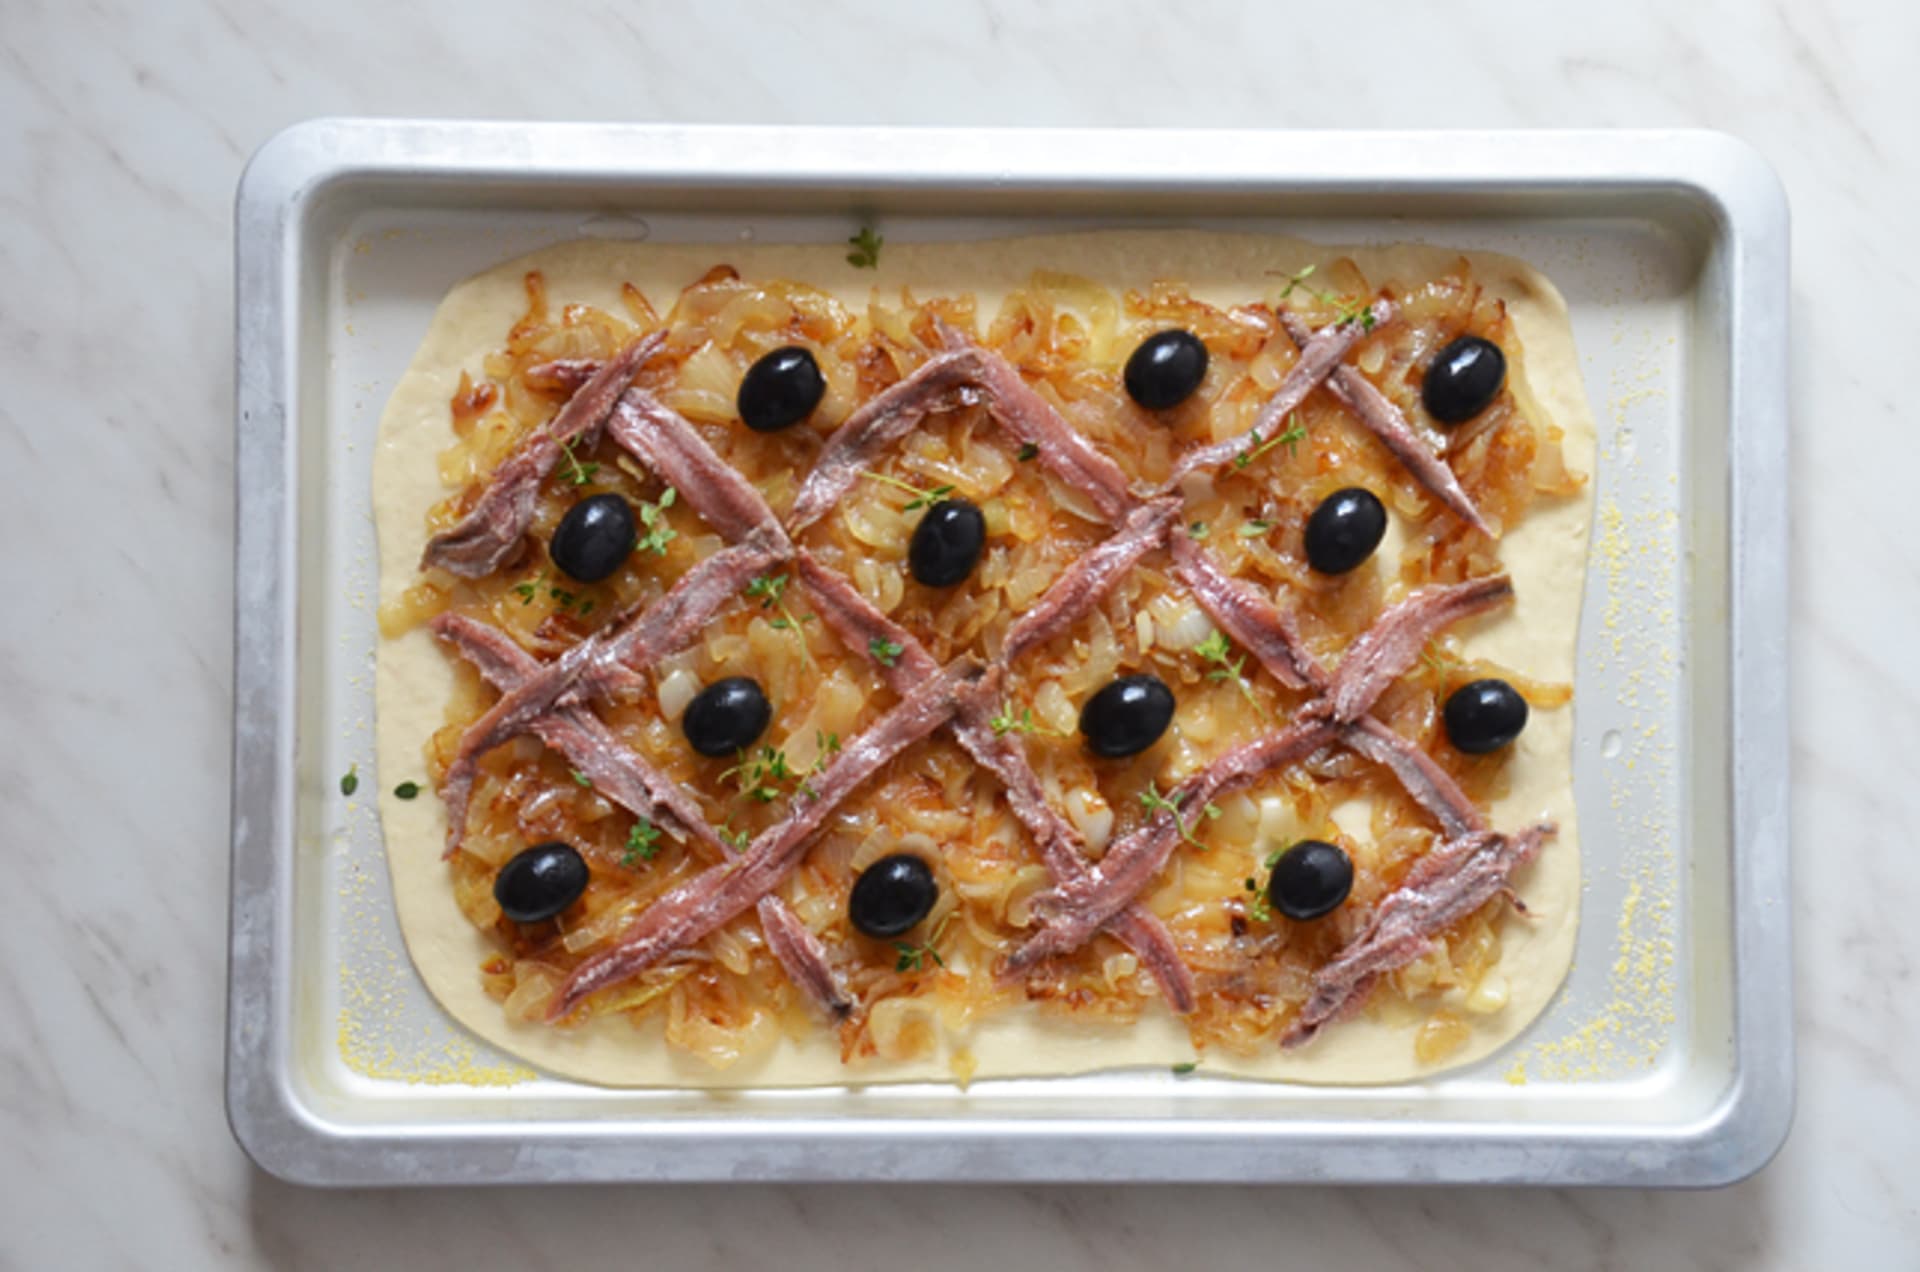 Pissaladiere - slaný koláč s karamelizovanou cibulí, ančovičkami a olivami 2